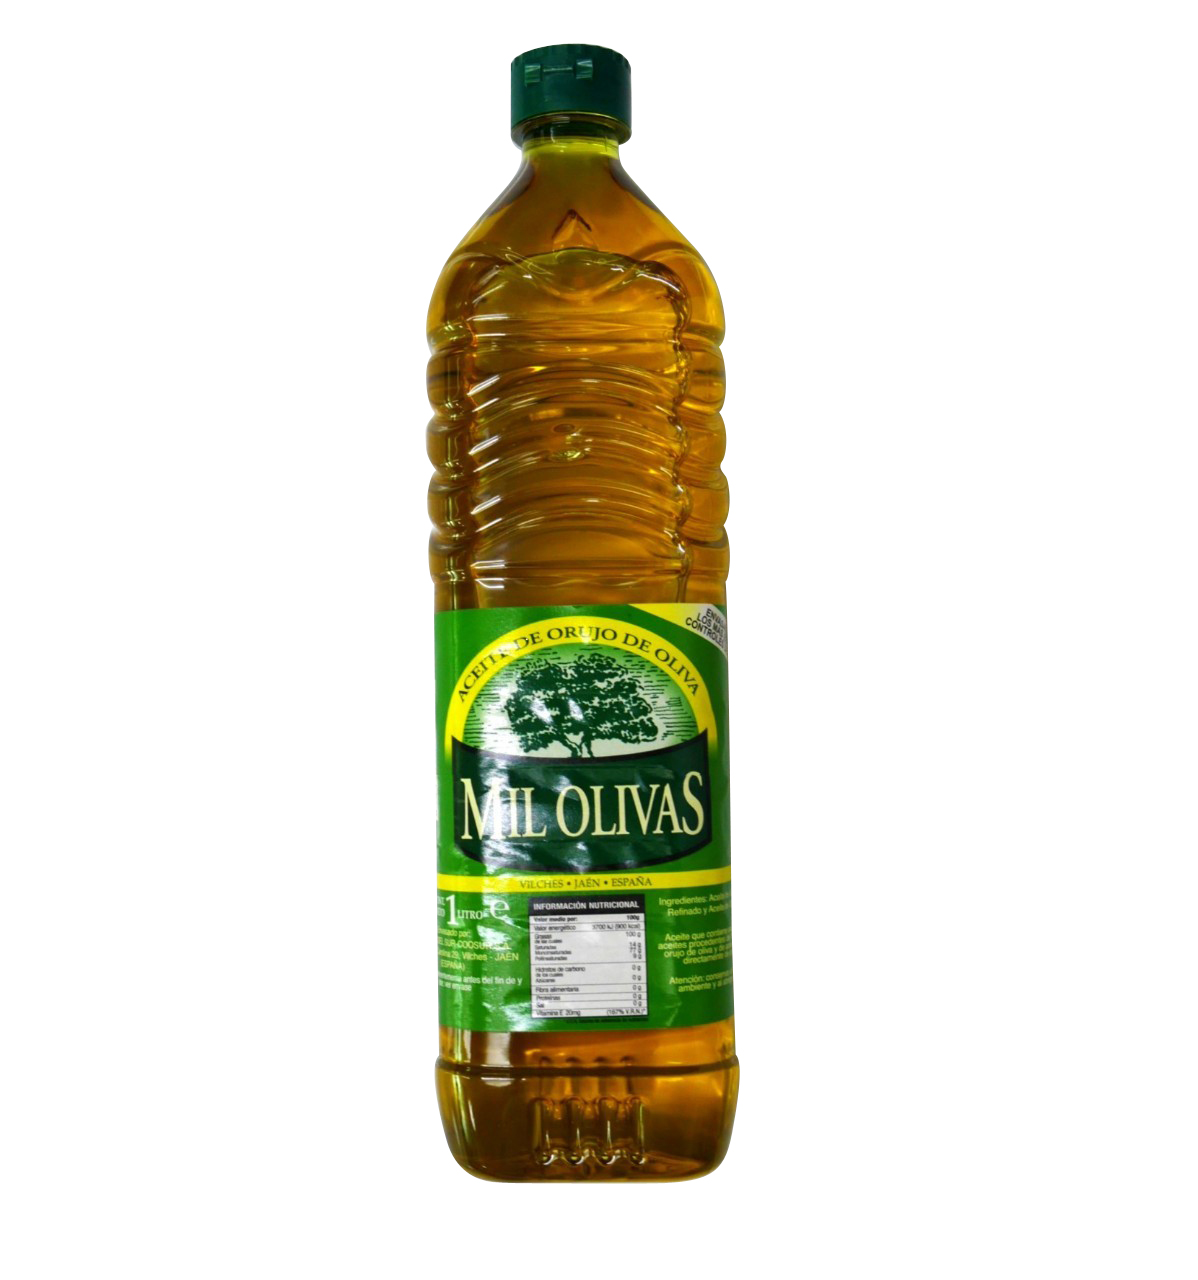 1L./ขวด/BOTTLE น้ำมันมะกอกโพมาซ 1 ลิตร (น้ำมันมะกอกสำหรับผัด/ทอด) “MIL OLIVAS” BRAND POMACE OLIVE OIL